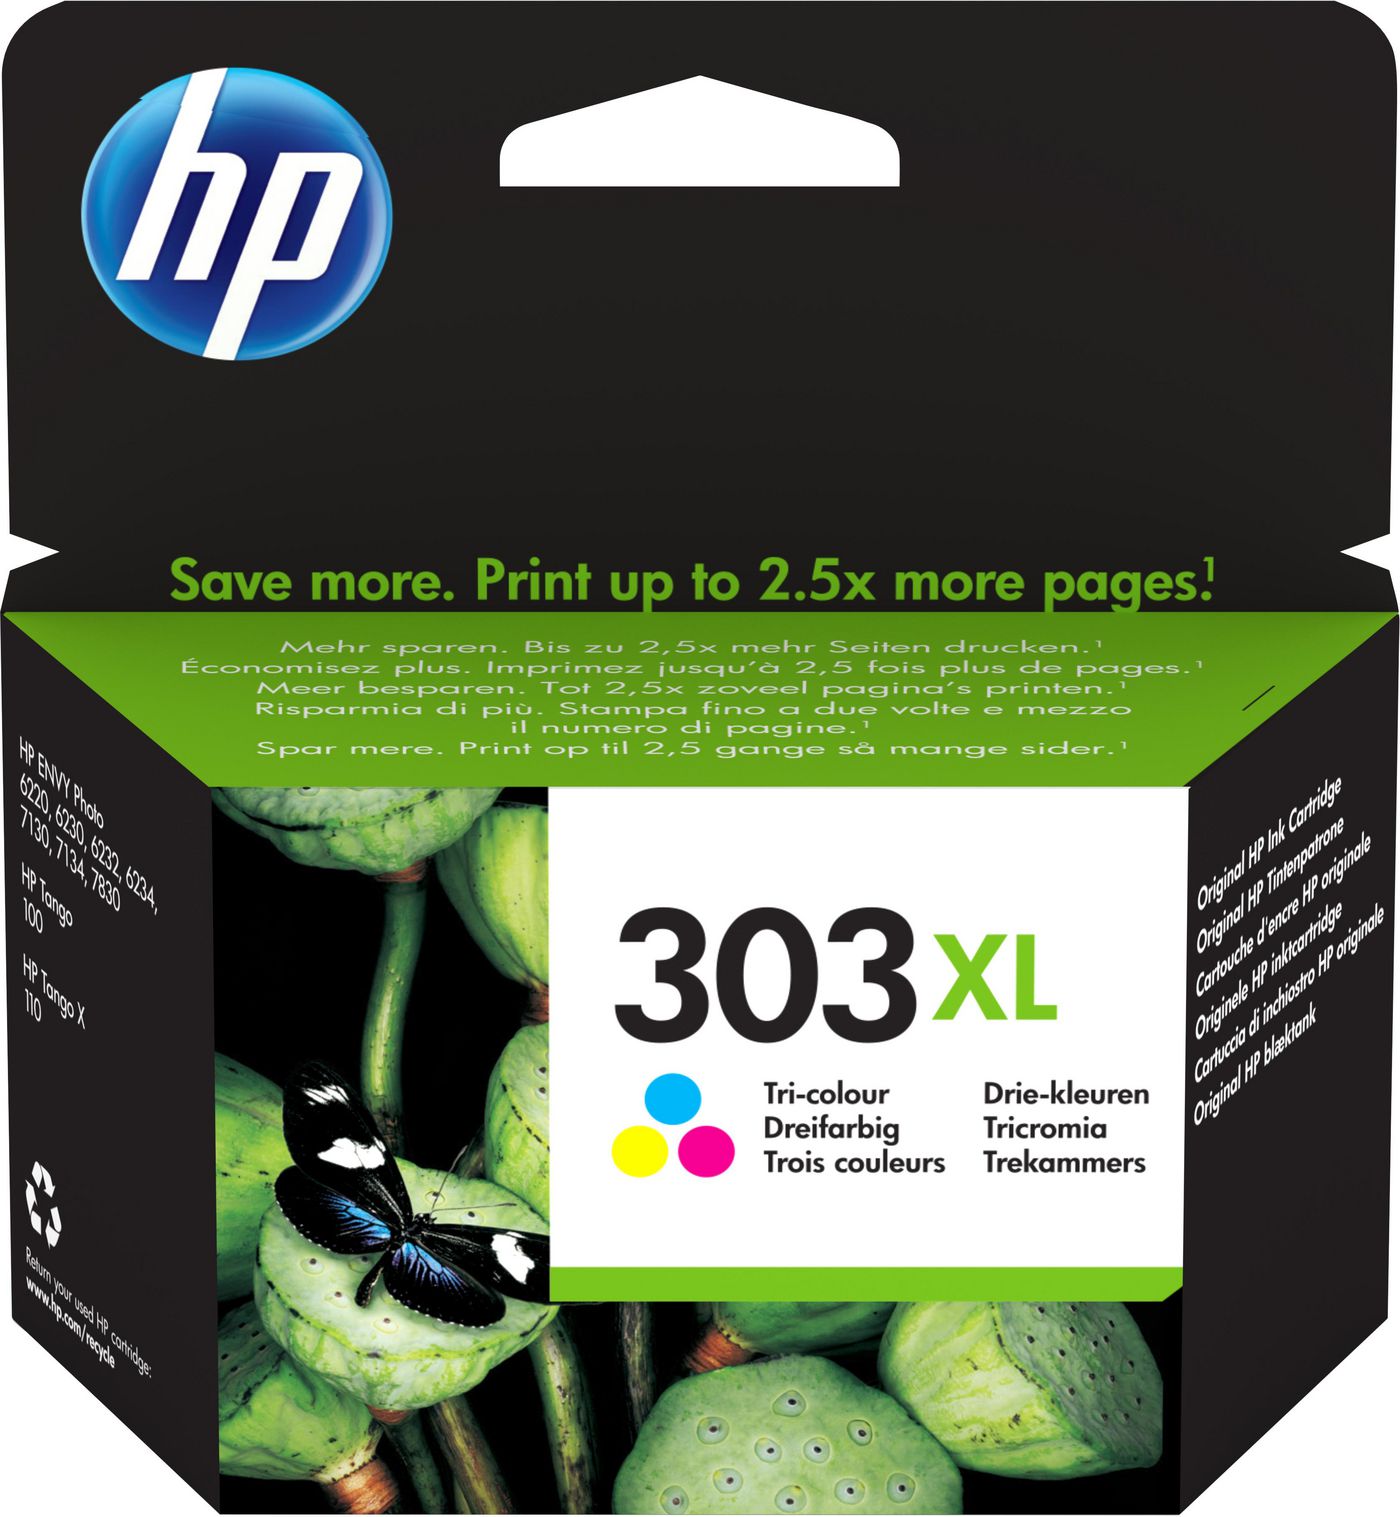 HP - Cartouche d'encre HP 303 noire